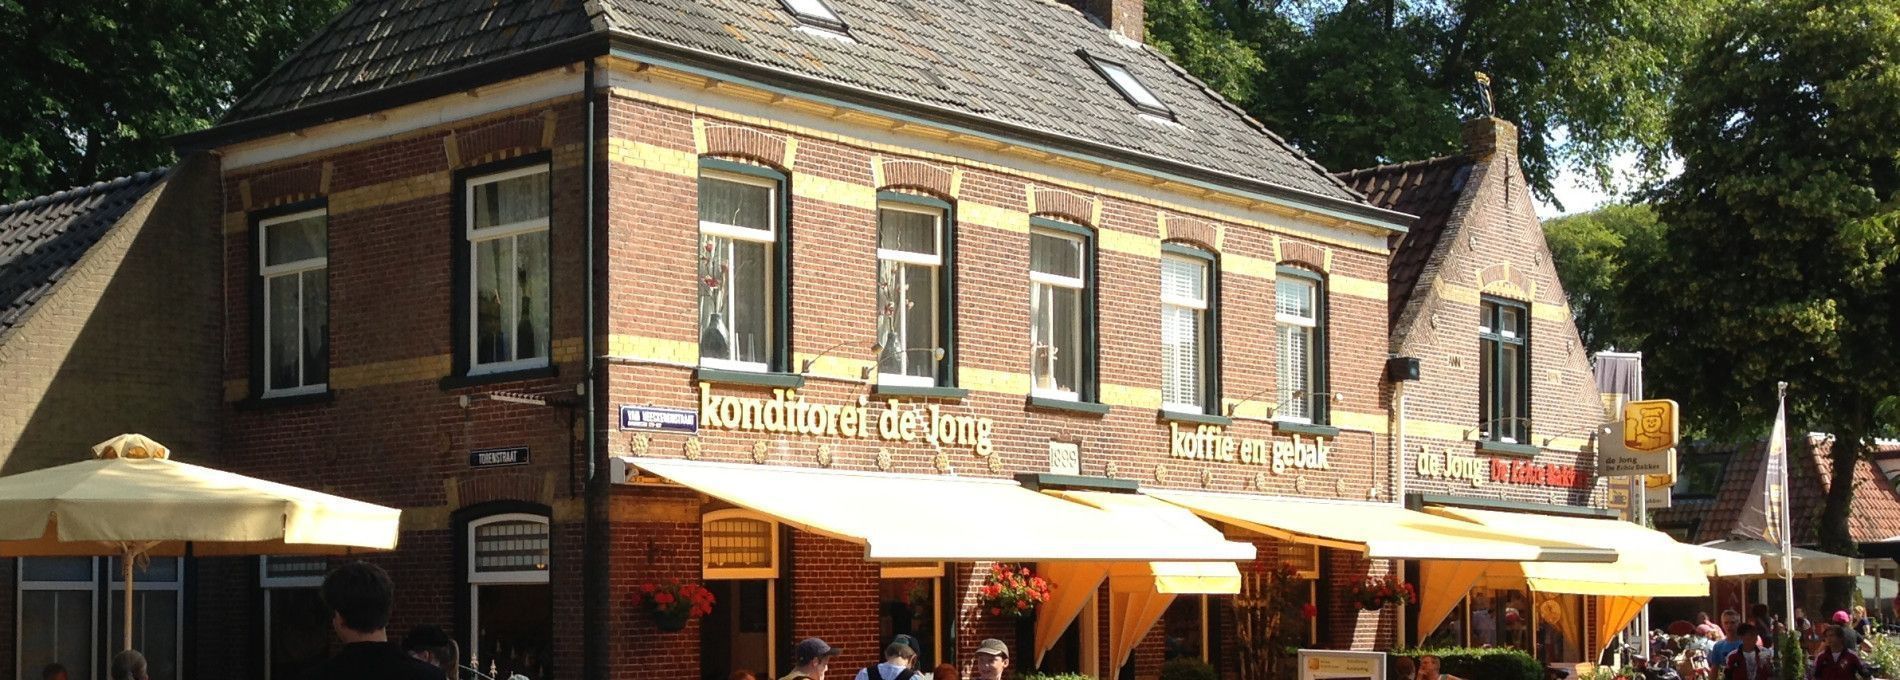 Bäckerei de Jong - VVV Ameland